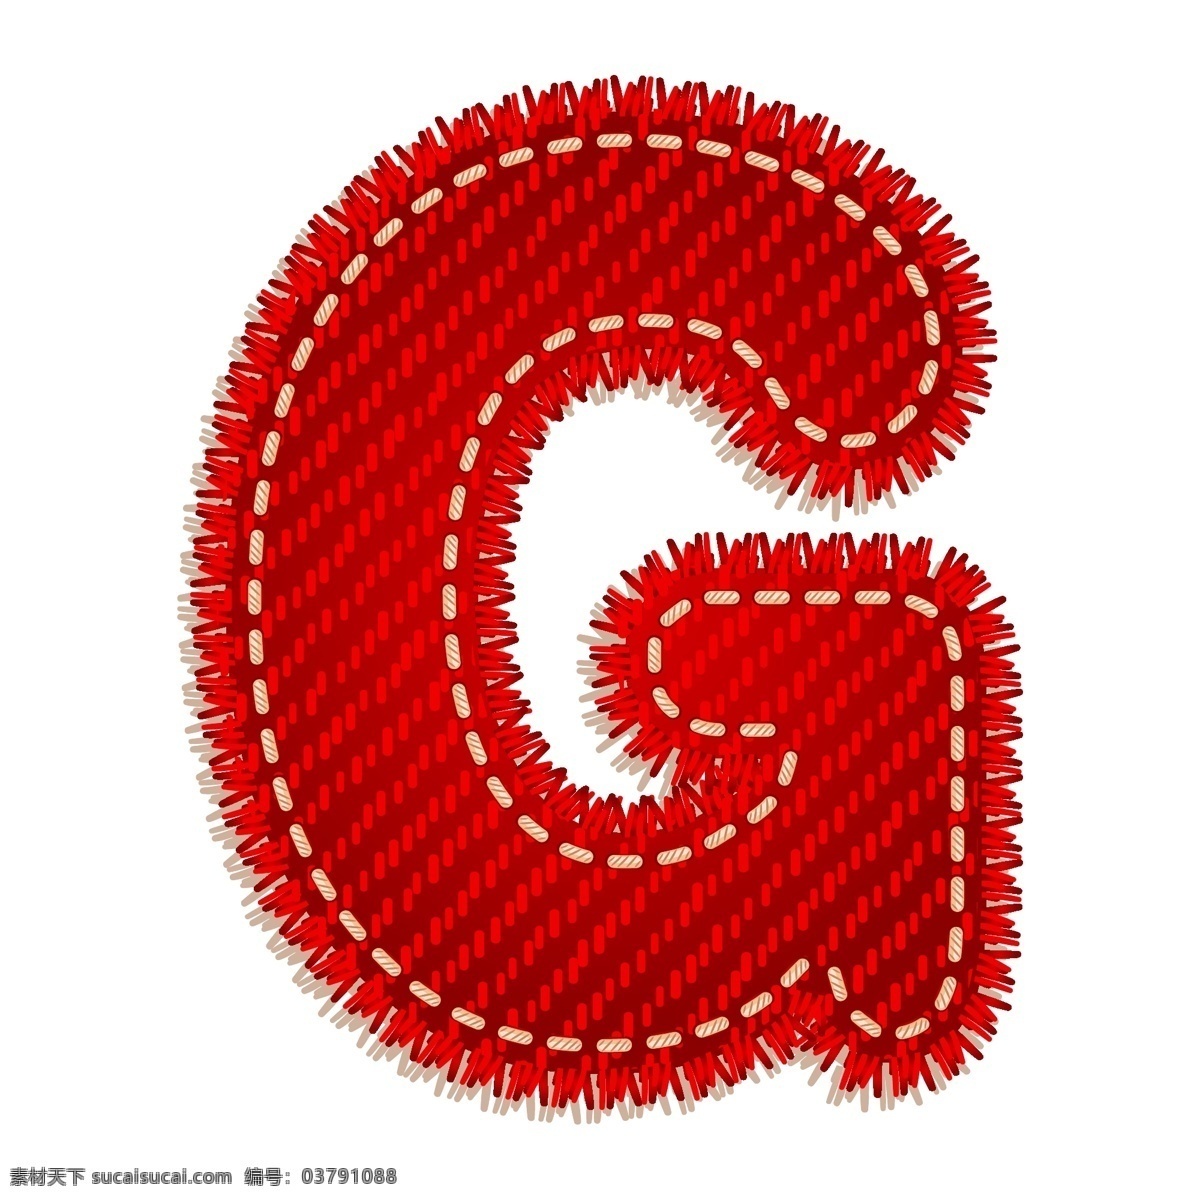 红色字母g 红色 字母 卡通字母 卡通图案 节日素材 g 书画文字 文化艺术 矢量素材 白色